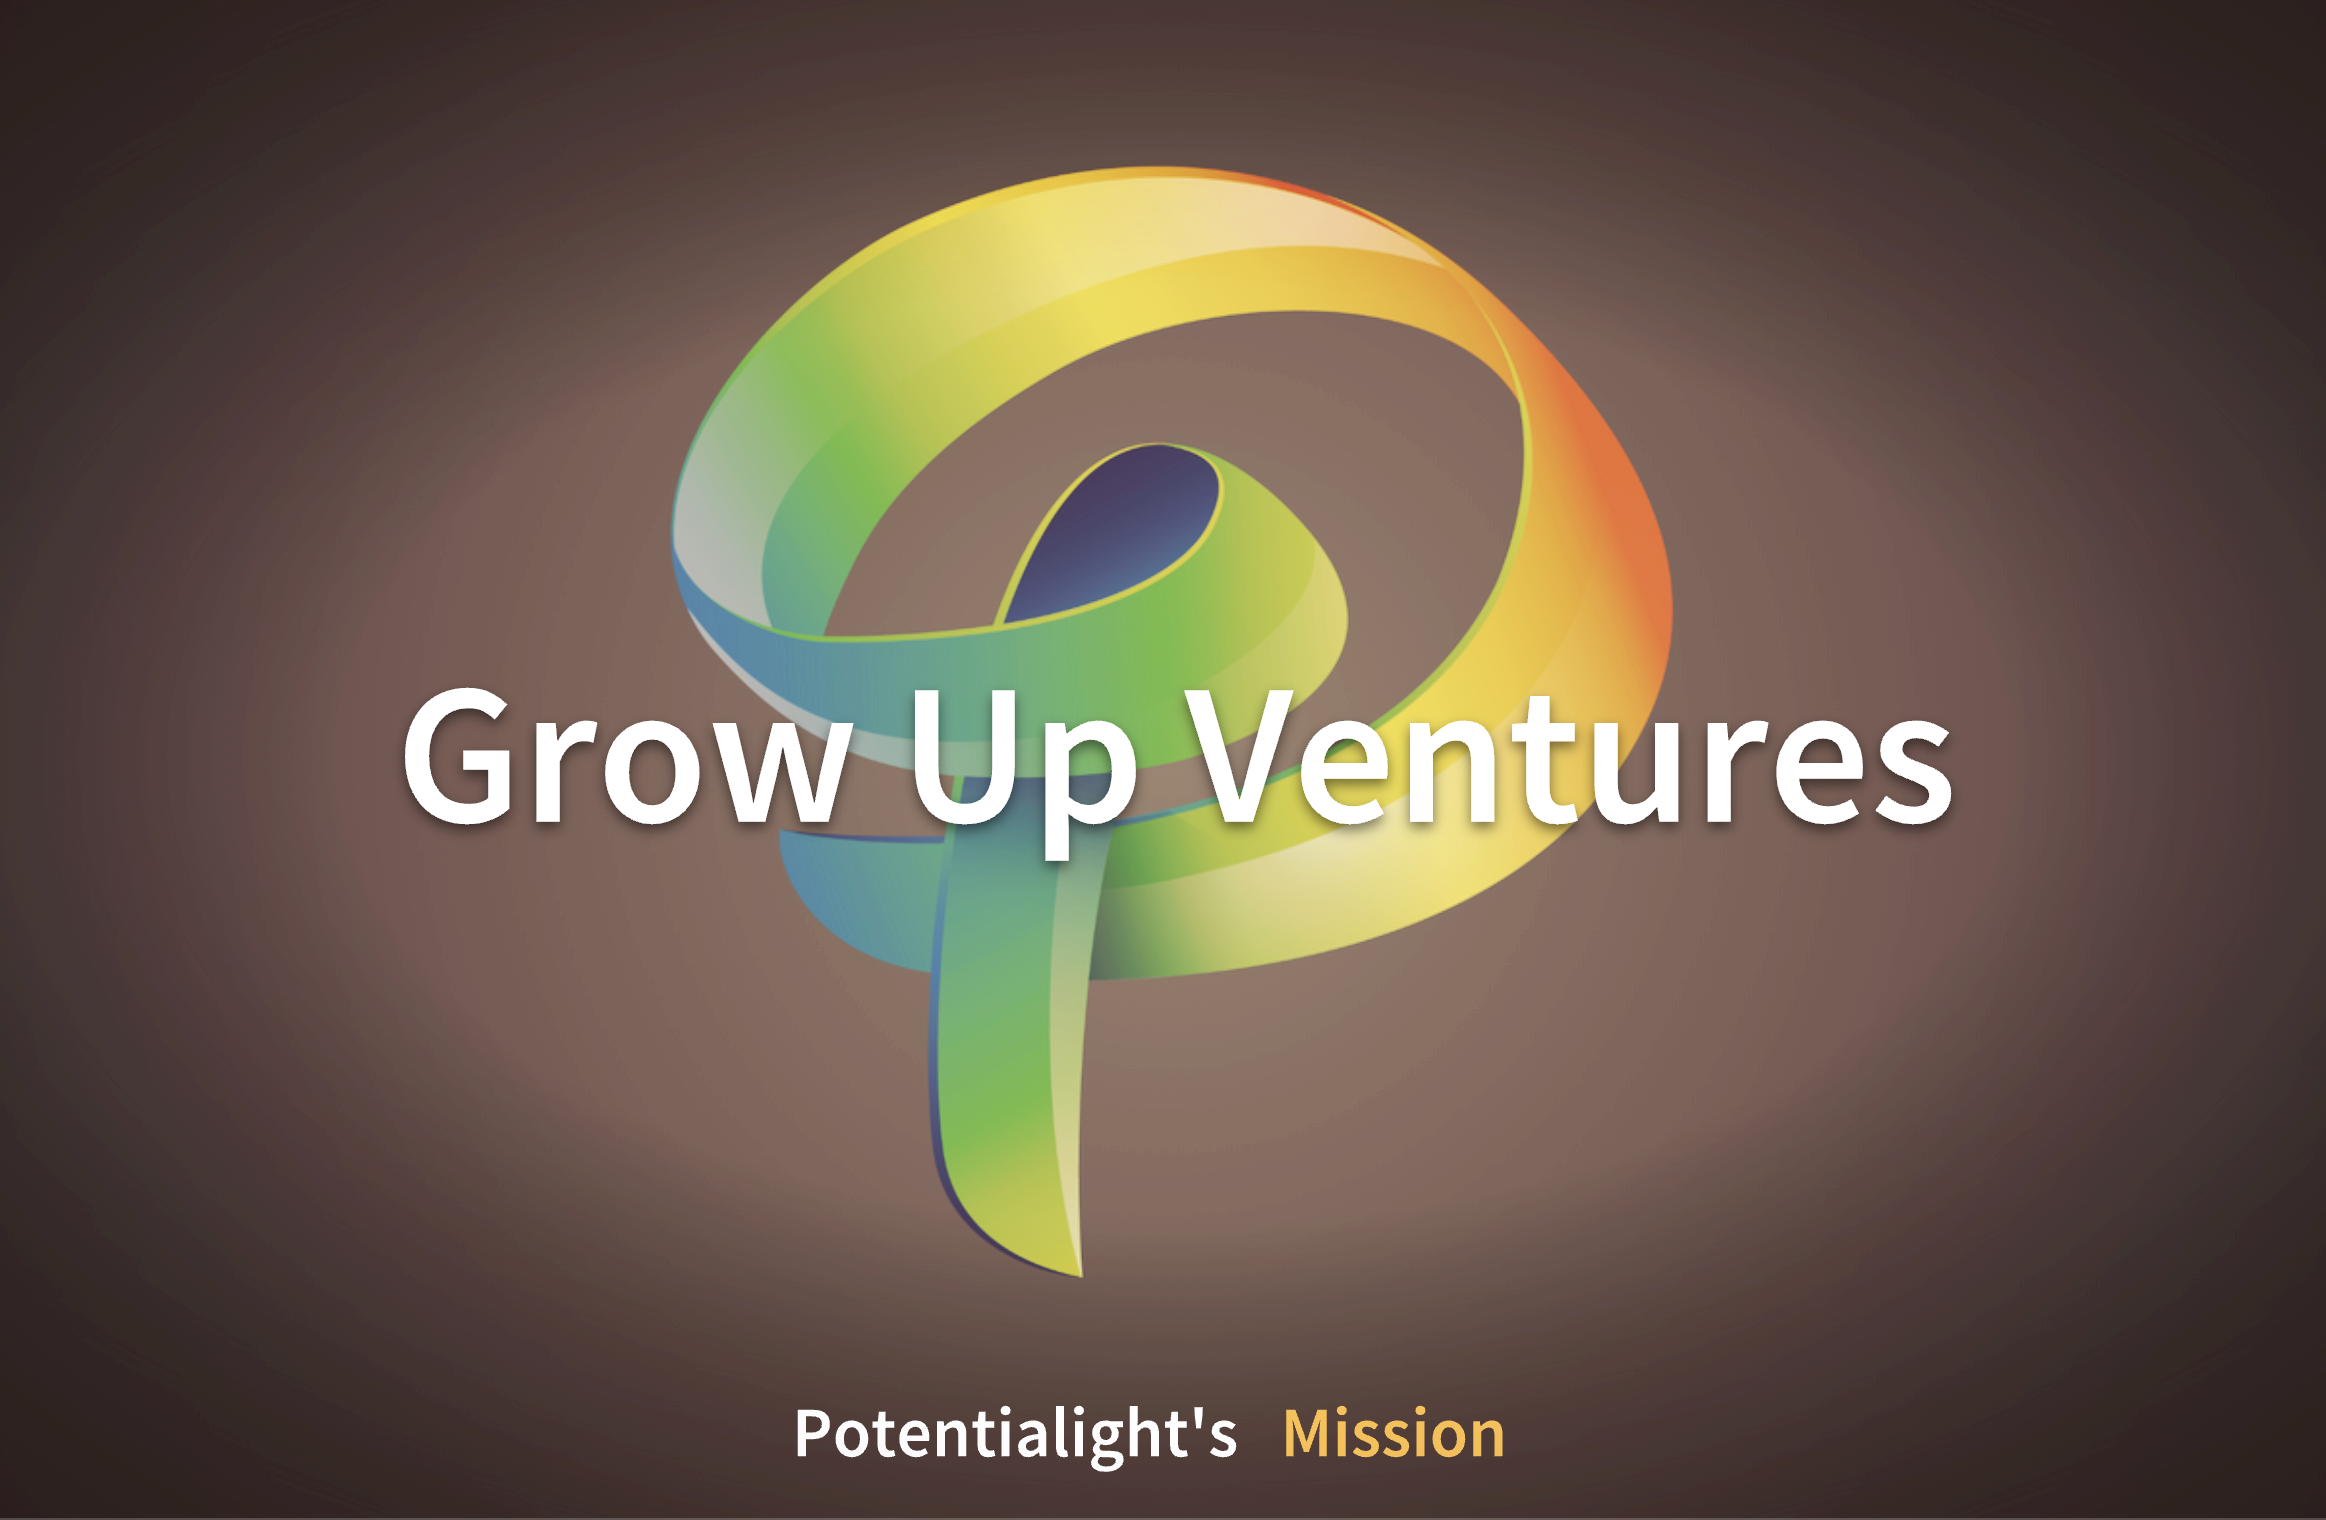 ポテンシャライトのMissionです。
「Grow Up」は、「成長を促進する存在として」「HR業界を変革する存在として」の2つの意味が込められています。
「Ventures」は「成長意欲がある/チャレンジをしている」とう定義です。
つまり、成長意欲がある/チャレンジをしている企業を応援していくという思想があります。